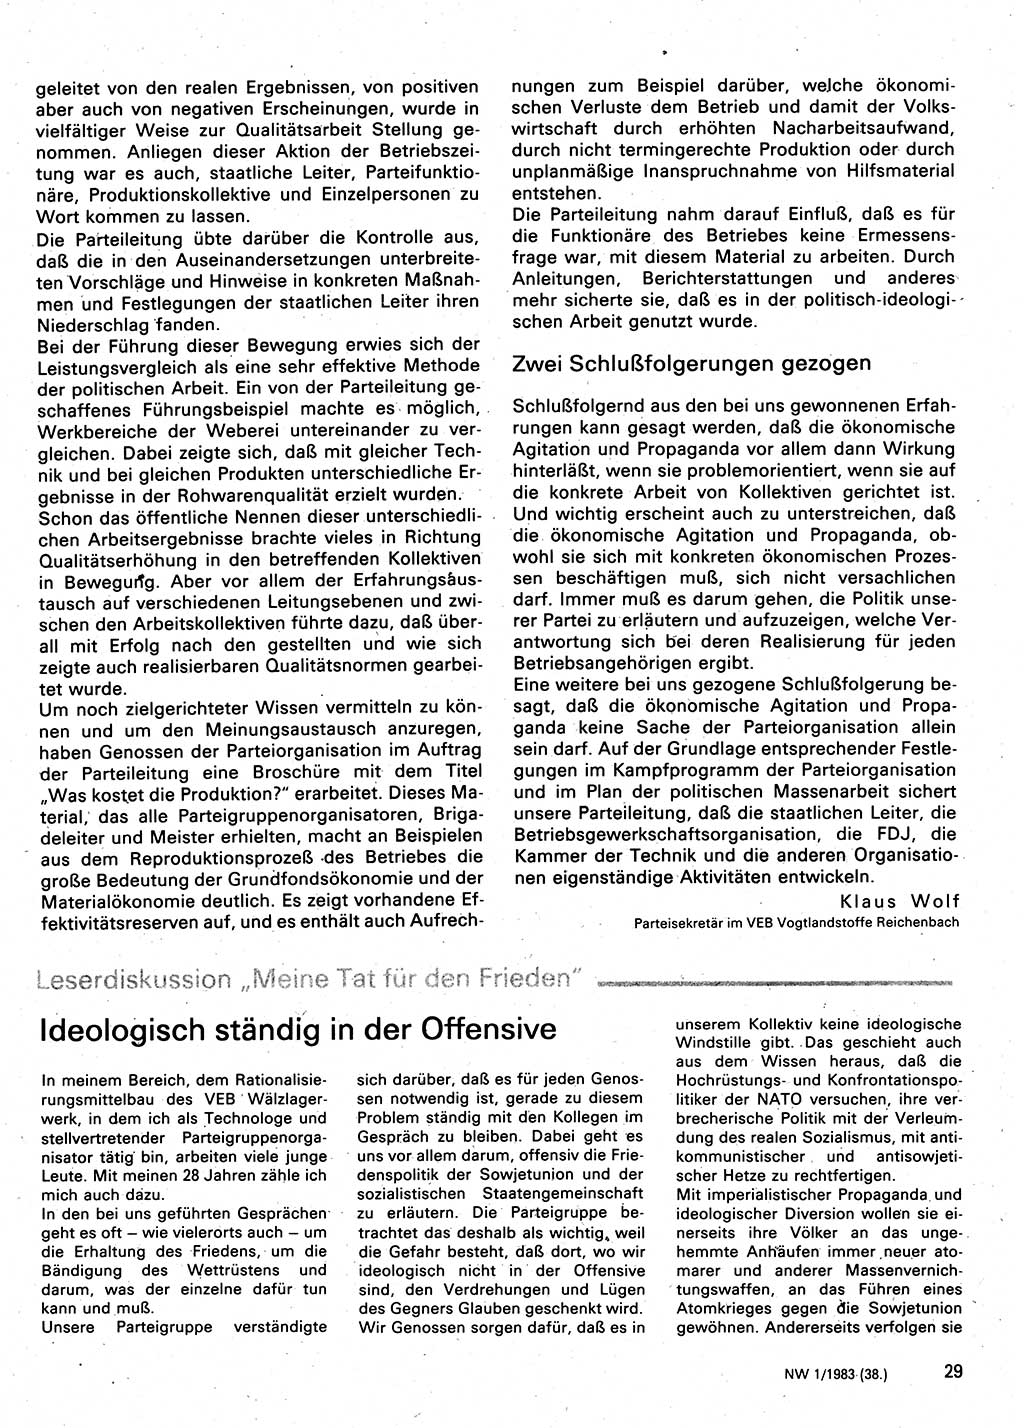 Neuer Weg (NW), Organ des Zentralkomitees (ZK) der SED (Sozialistische Einheitspartei Deutschlands) für Fragen des Parteilebens, 38. Jahrgang [Deutsche Demokratische Republik (DDR)] 1983, Seite 29 (NW ZK SED DDR 1983, S. 29)